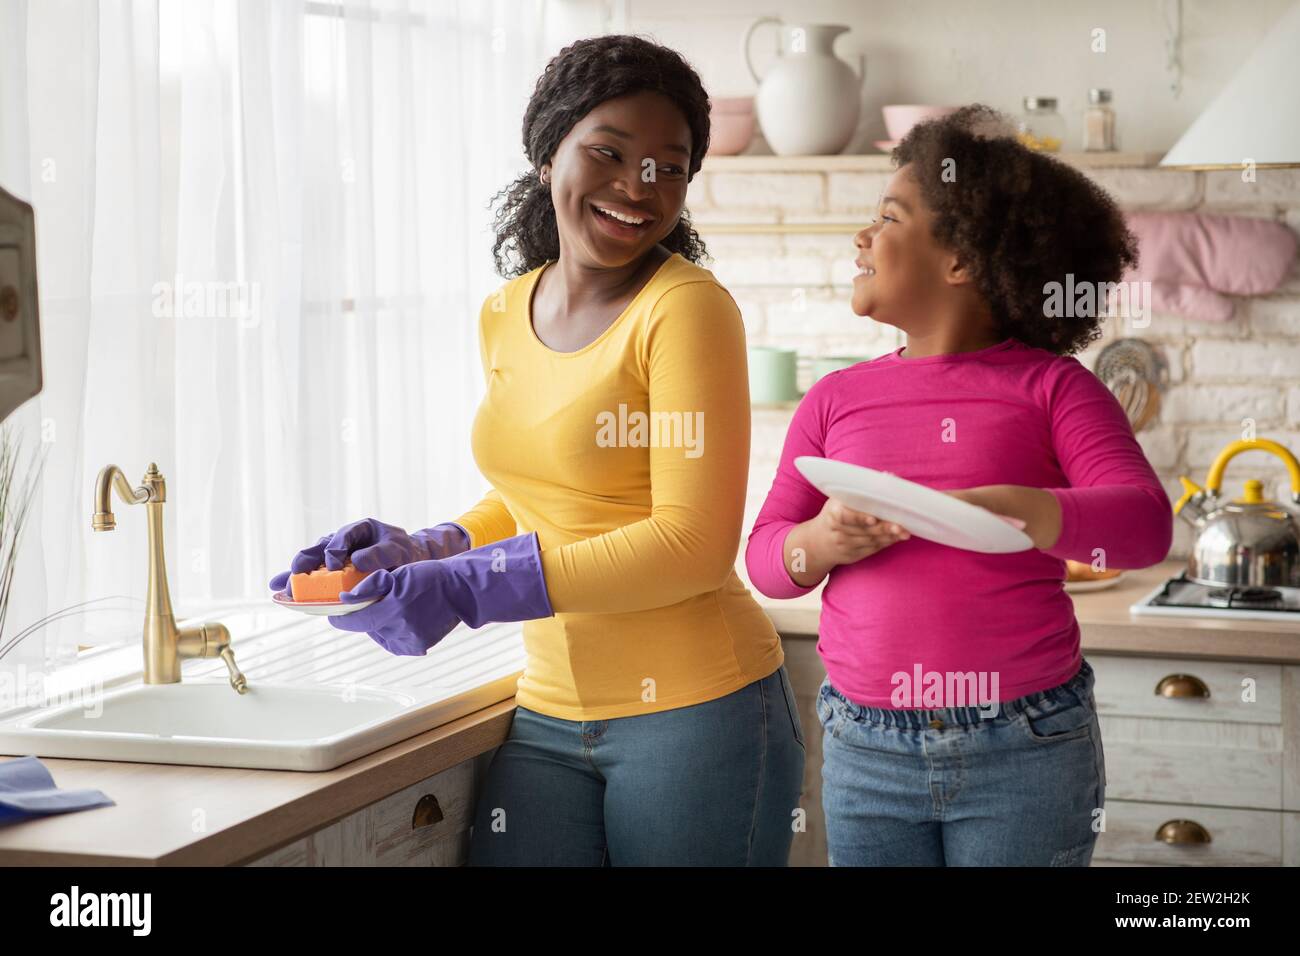 Main d'aide. Mignon petite fille noire aide sa maman dans la cuisine Banque D'Images